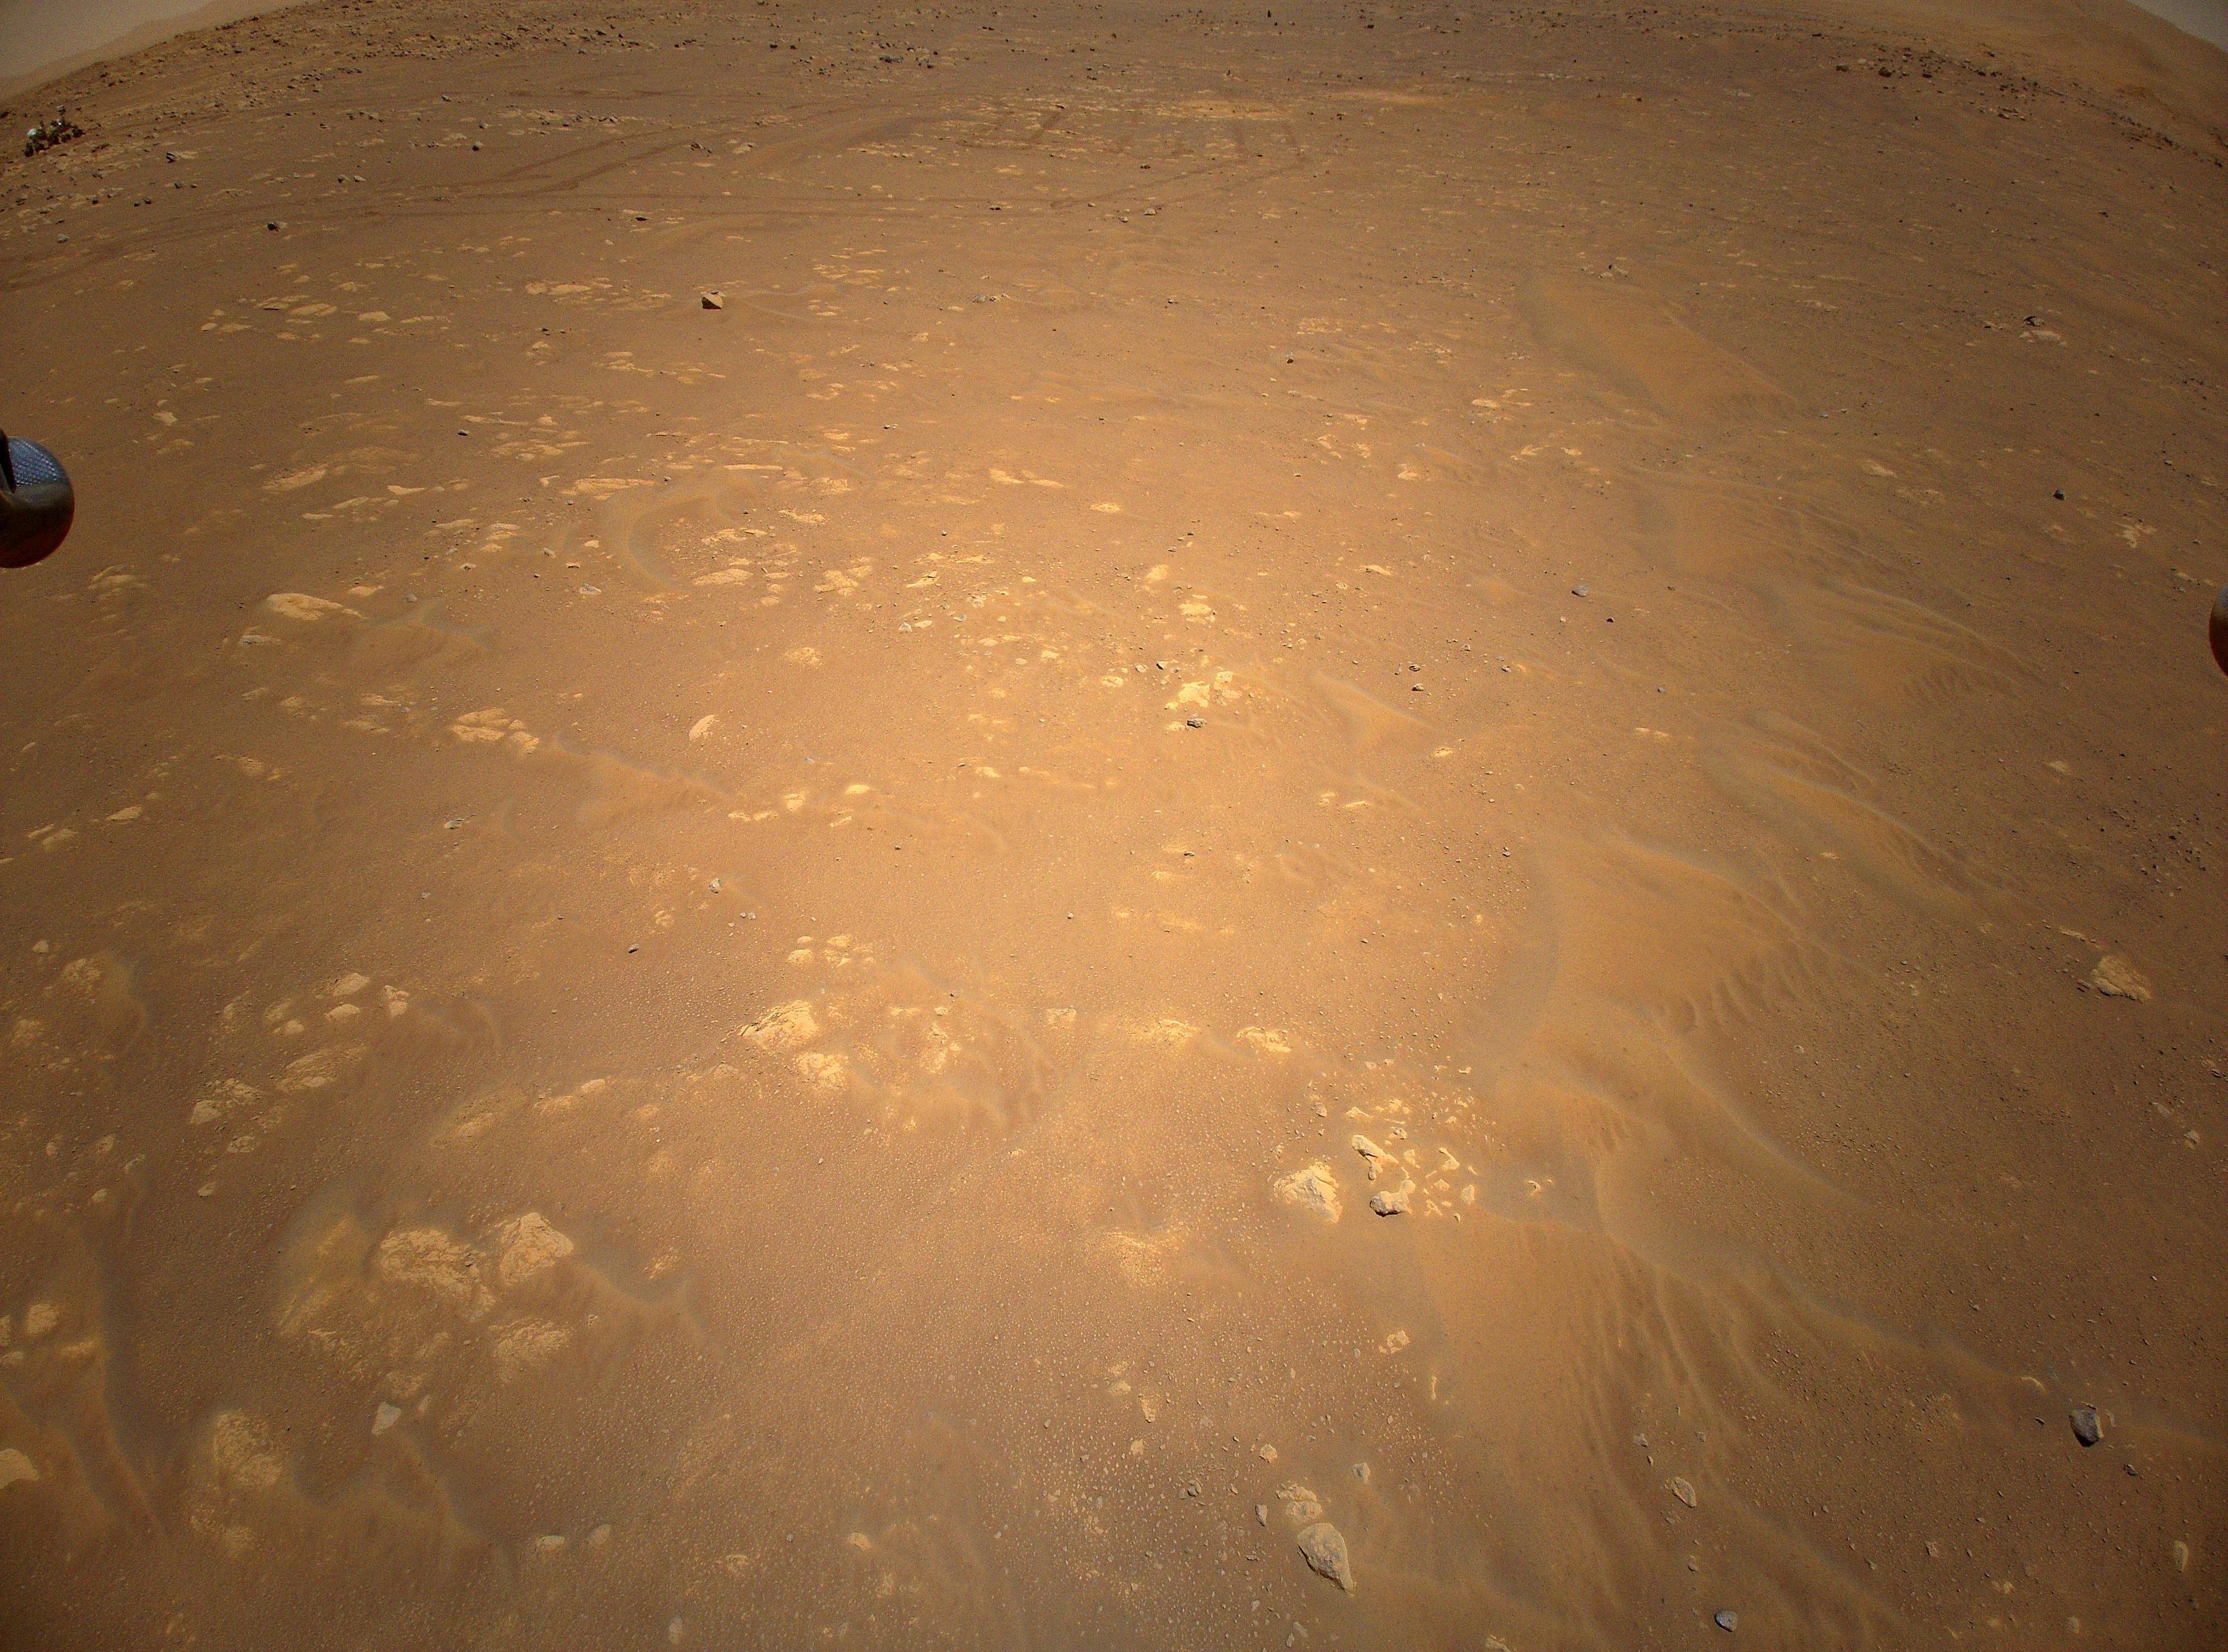 صورة جوّية قريبة لسطح المرّيخ تظهر فيها الأتربة والأحجار، تظهر في أعلى الصورة مسارات عربة المُثابرة الجوّالة وفي أقصى اليسار العربة نفسها. يظهر من حافّتي الصورة اليمنى واليسرى طرفا رجلين من أرجل هبوط البراعة.